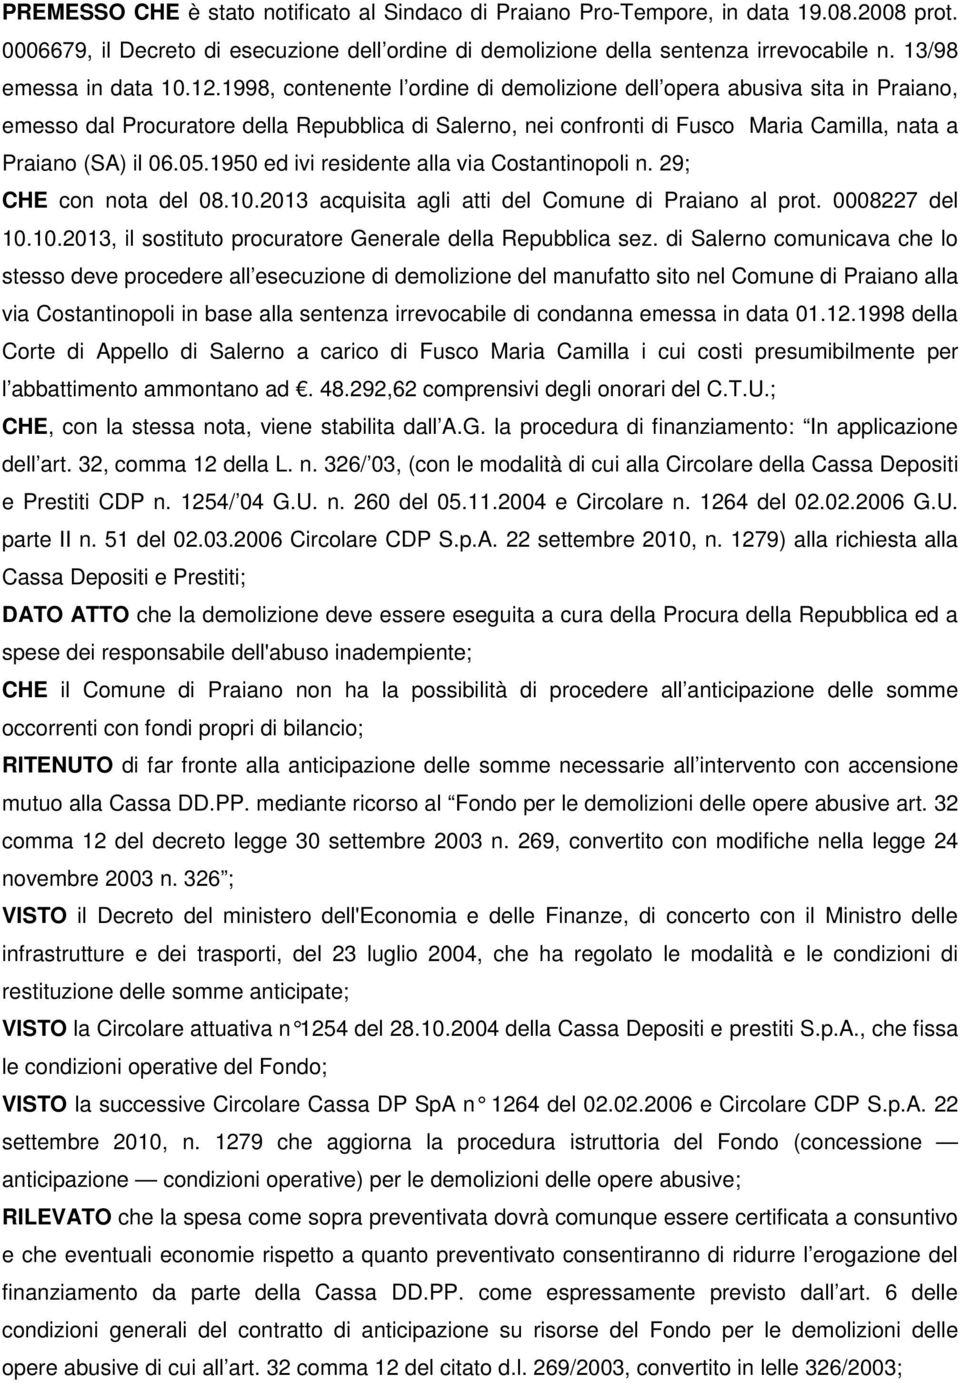 1998, contenente l ordine di demolizione dell opera abusiva sita in Praiano, emesso dal Procuratore della Repubblica di Salerno, nei confronti di Fusco Maria Camilla, nata a Praiano (SA) il 06.05.